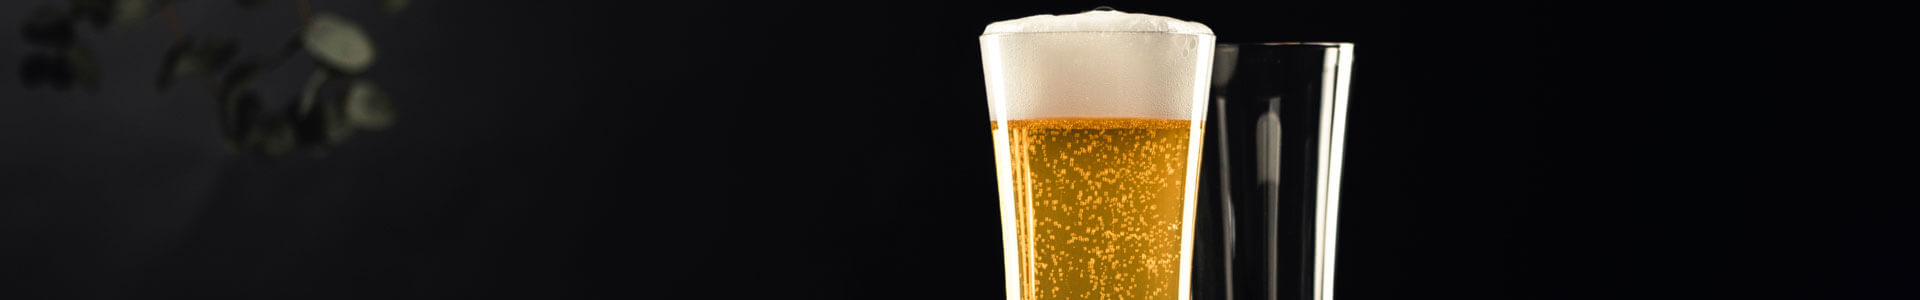 Gefülltes und leeres Weizenbierglas aus der Beer Basic Bierglas-Serie von Zwiesel Glas. 